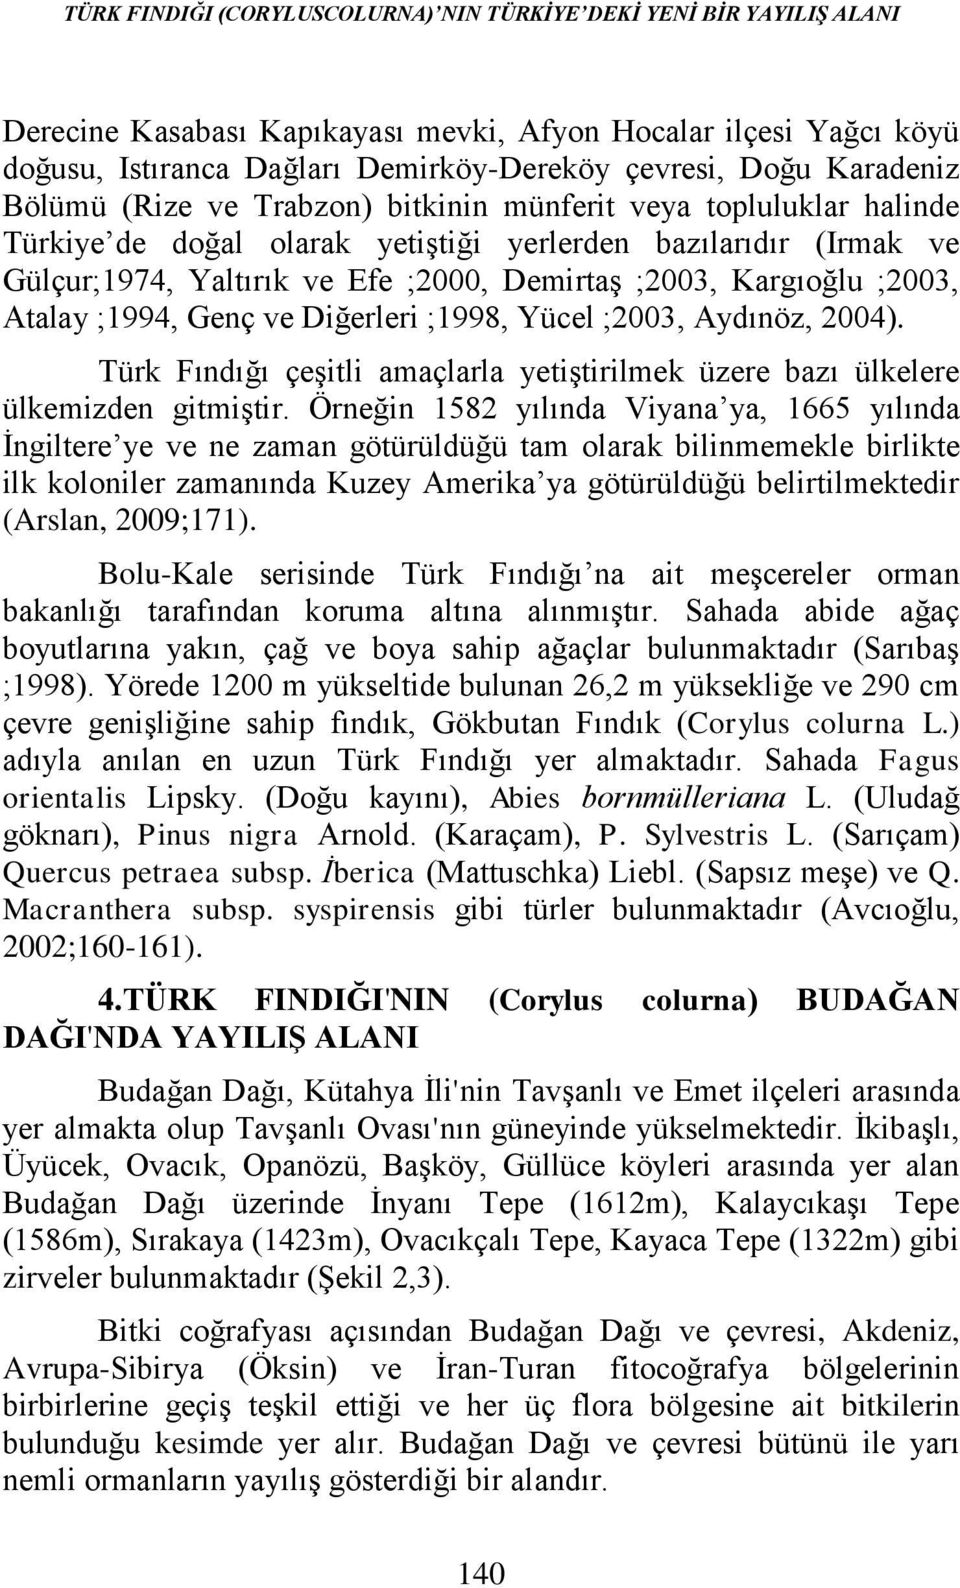 Kargıoğlu ;2003, Atalay ;1994, Genç ve Diğerleri ;1998, Yücel ;2003, Aydınöz, 2004). Türk Fındığı çeşitli amaçlarla yetiştirilmek üzere bazı ülkelere ülkemizden gitmiştir.